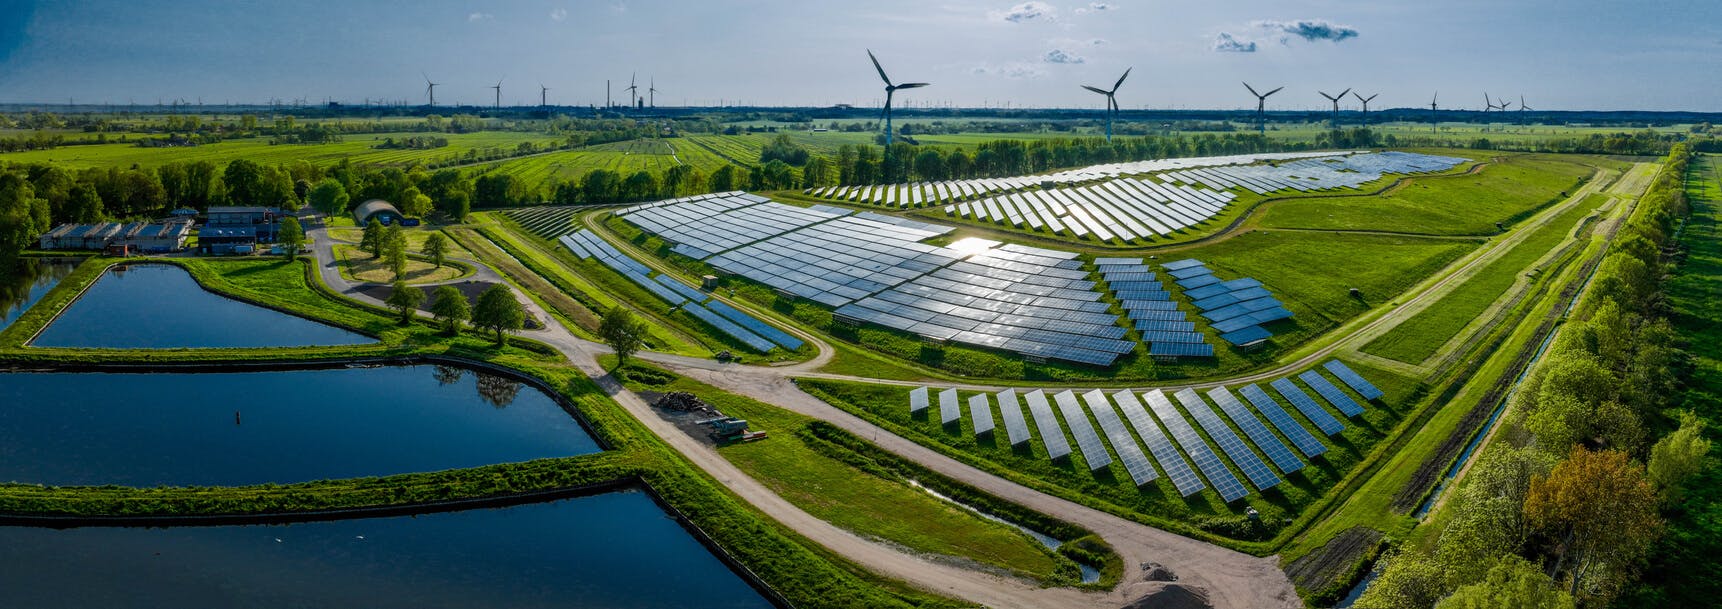  Fazenda de painéis solares e parque de turbinas eólicas.